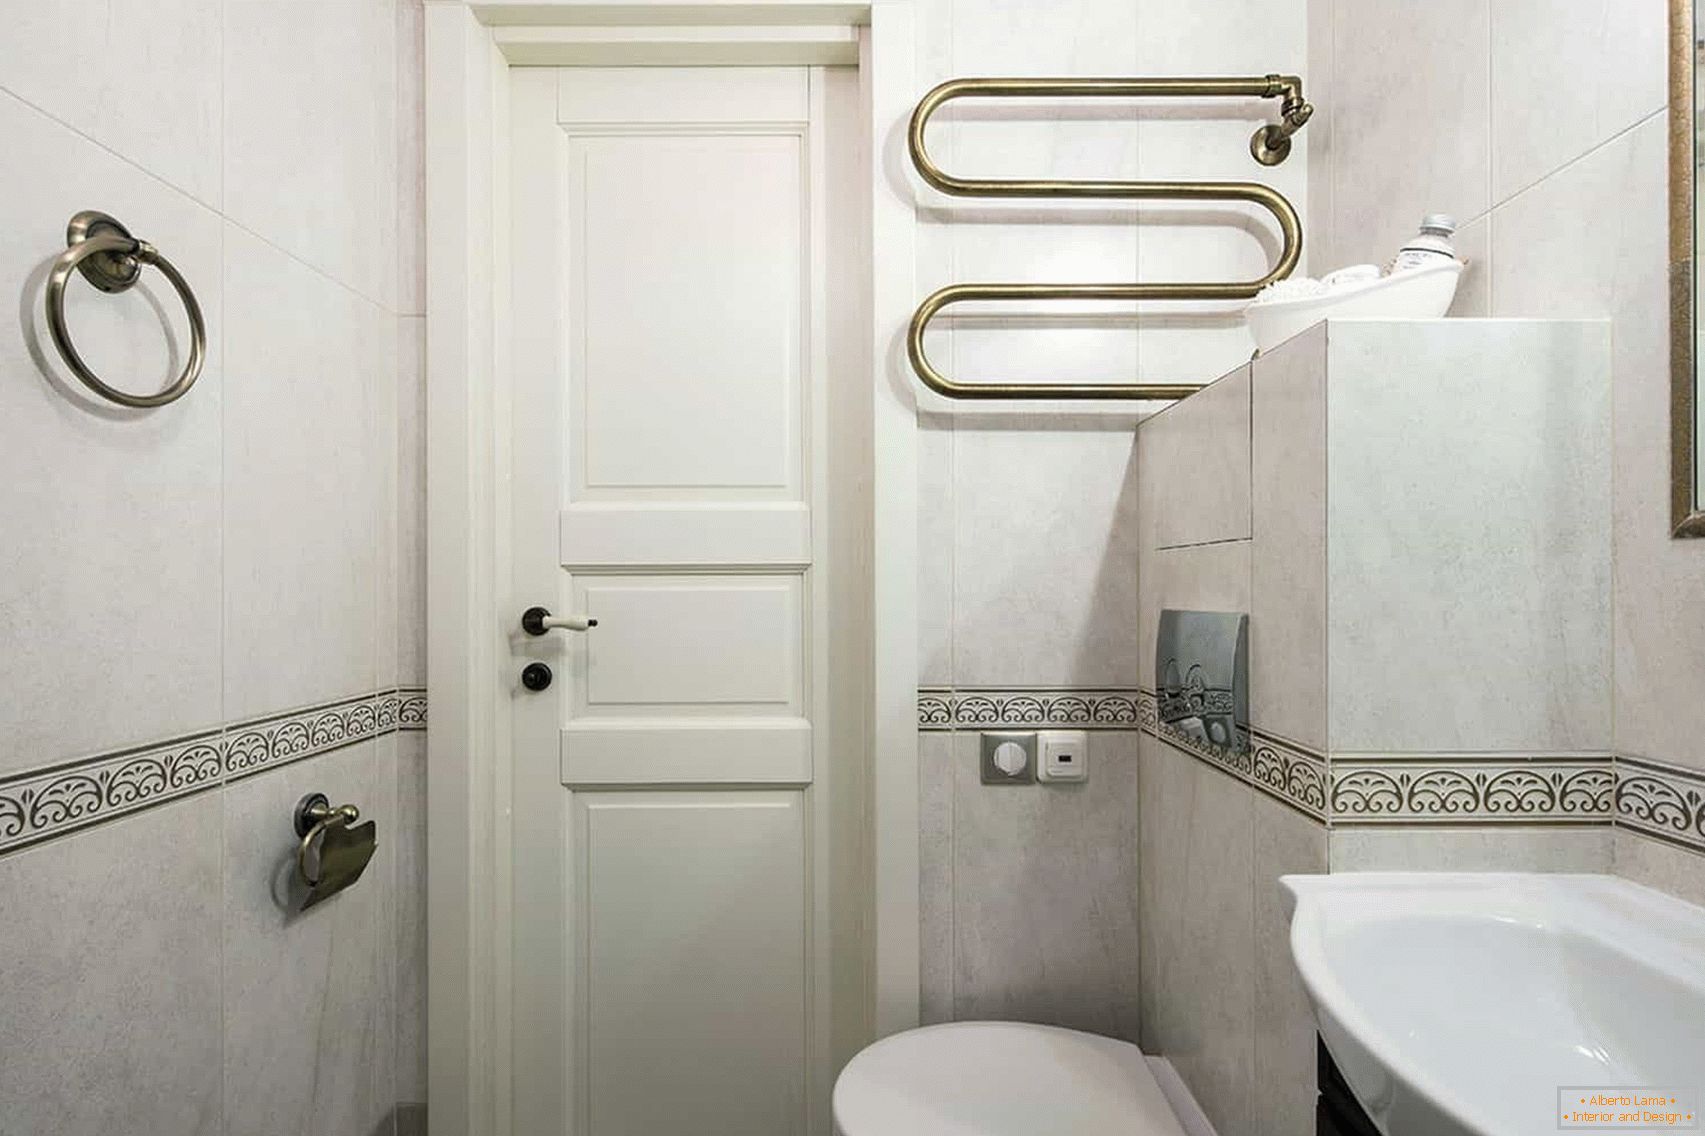 Dizajn kupaonice u kući ploče